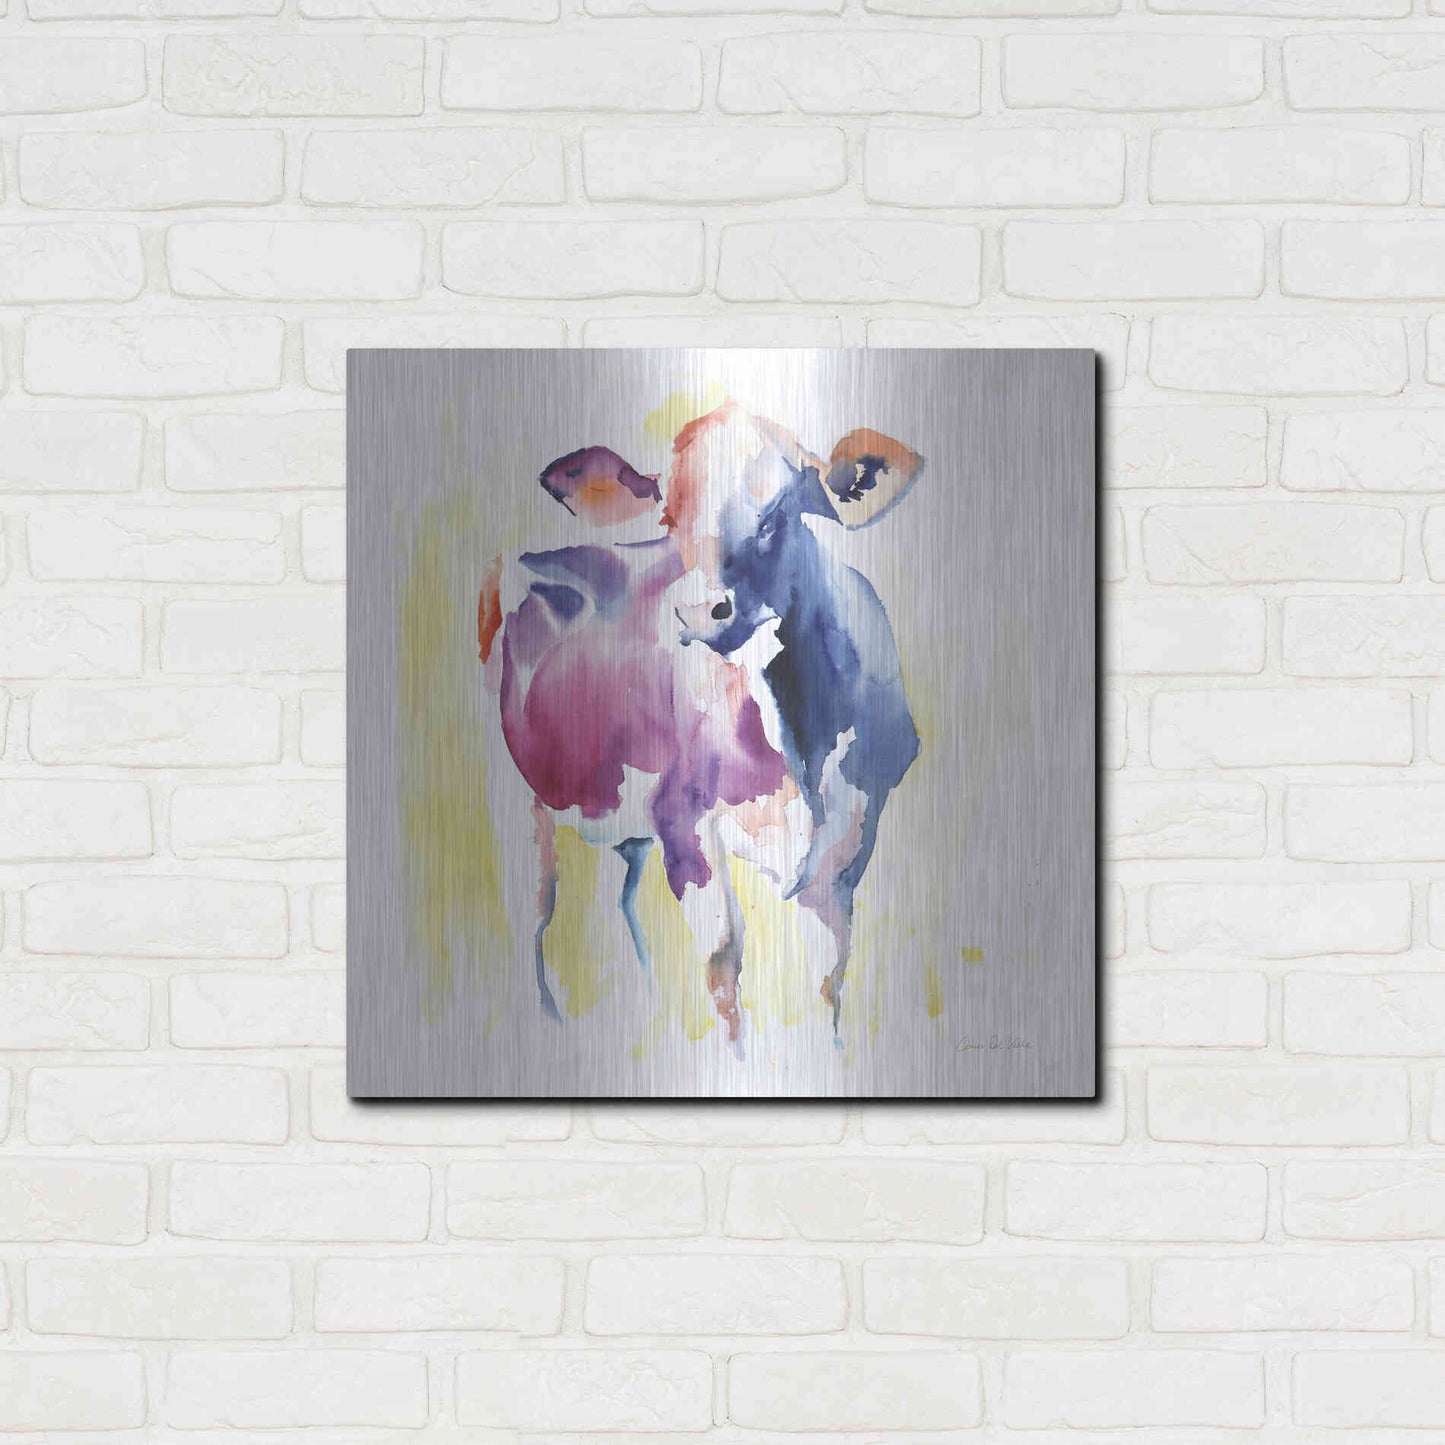 Luxe Metal Art 'Holstein III' by Alan Majchrowicz, Metal Wall Art,24x24